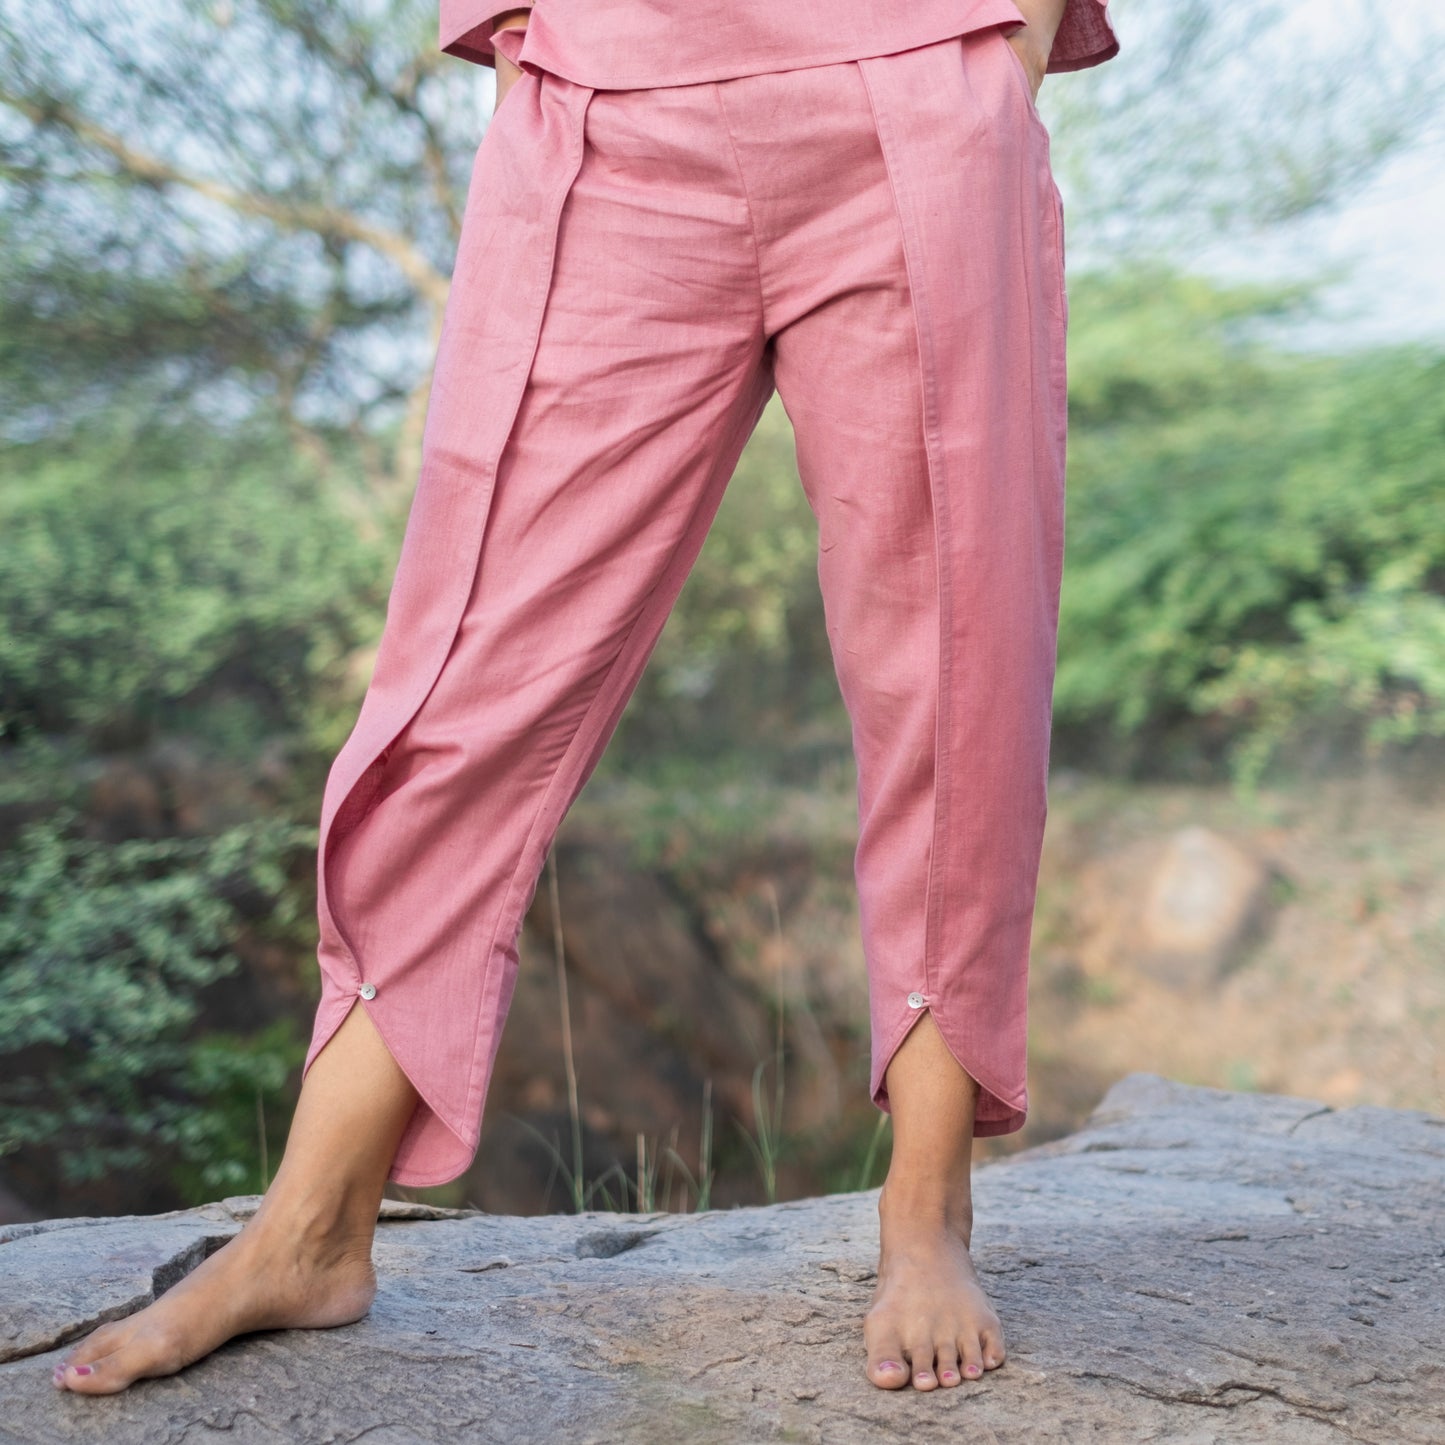 Surya Yoga Top and Pant Set Pink